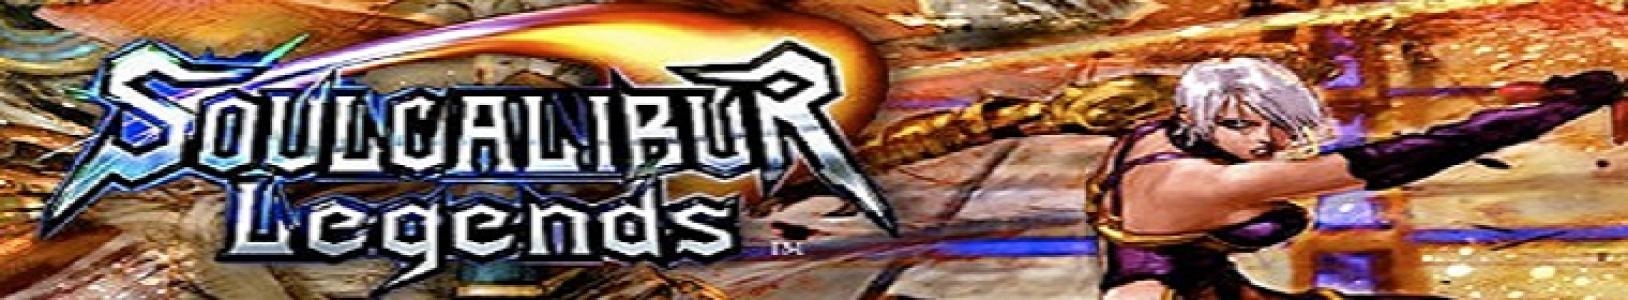 SoulCalibur Legends banner